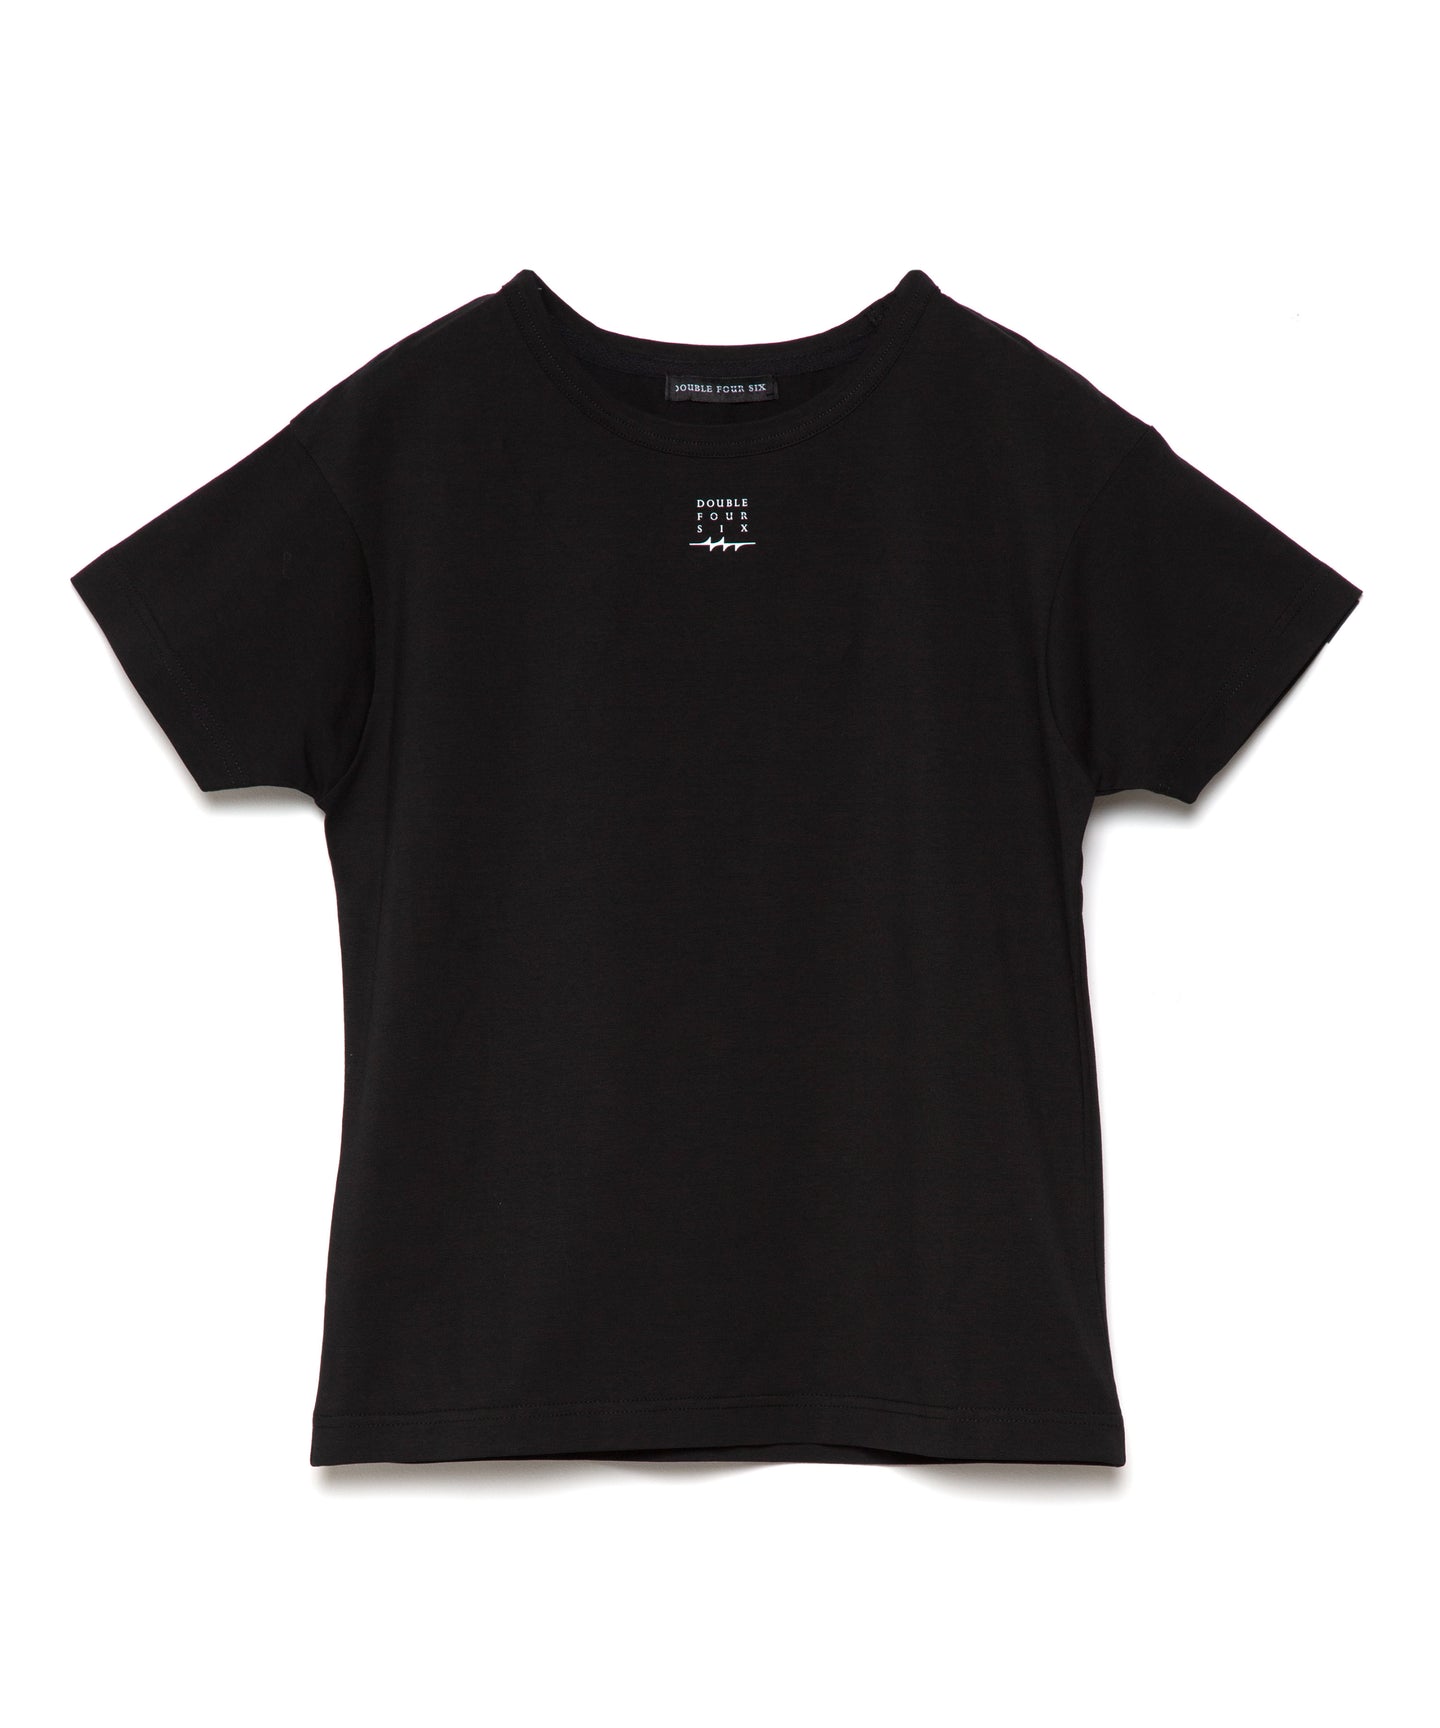 【数量限定商品】DOUBLE FOUR SIX- Square Logo Mini T-shirt Black